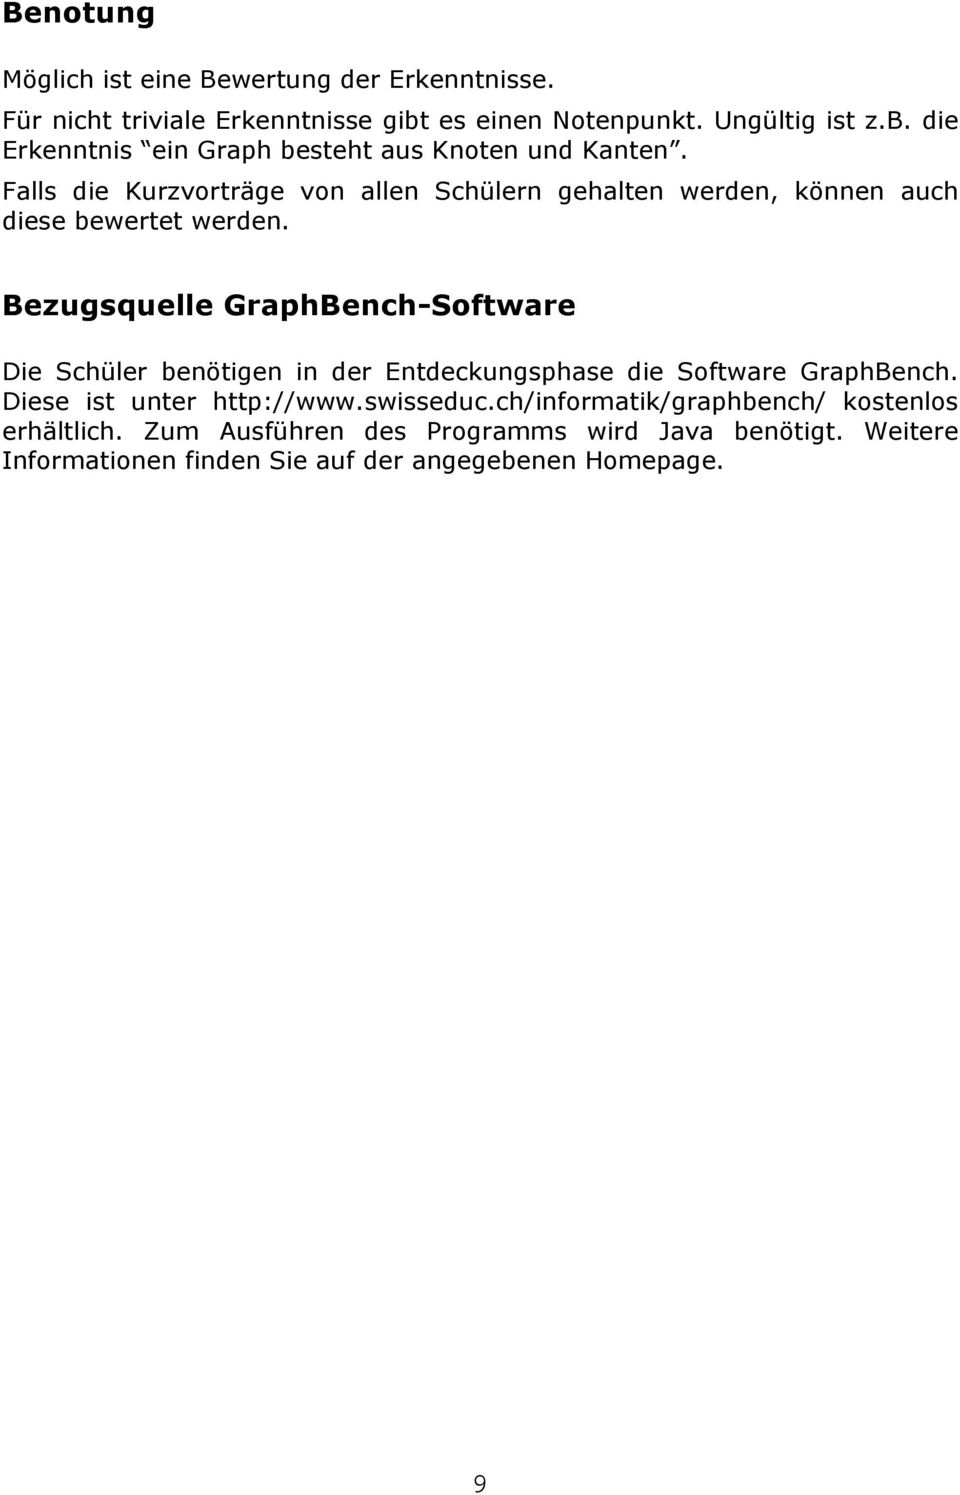 Bezugsquelle GraphBench-Software Die Schüler benötigen in der Entdeckungsphase die Software GraphBench. Diese ist unter http://www.swisseduc.